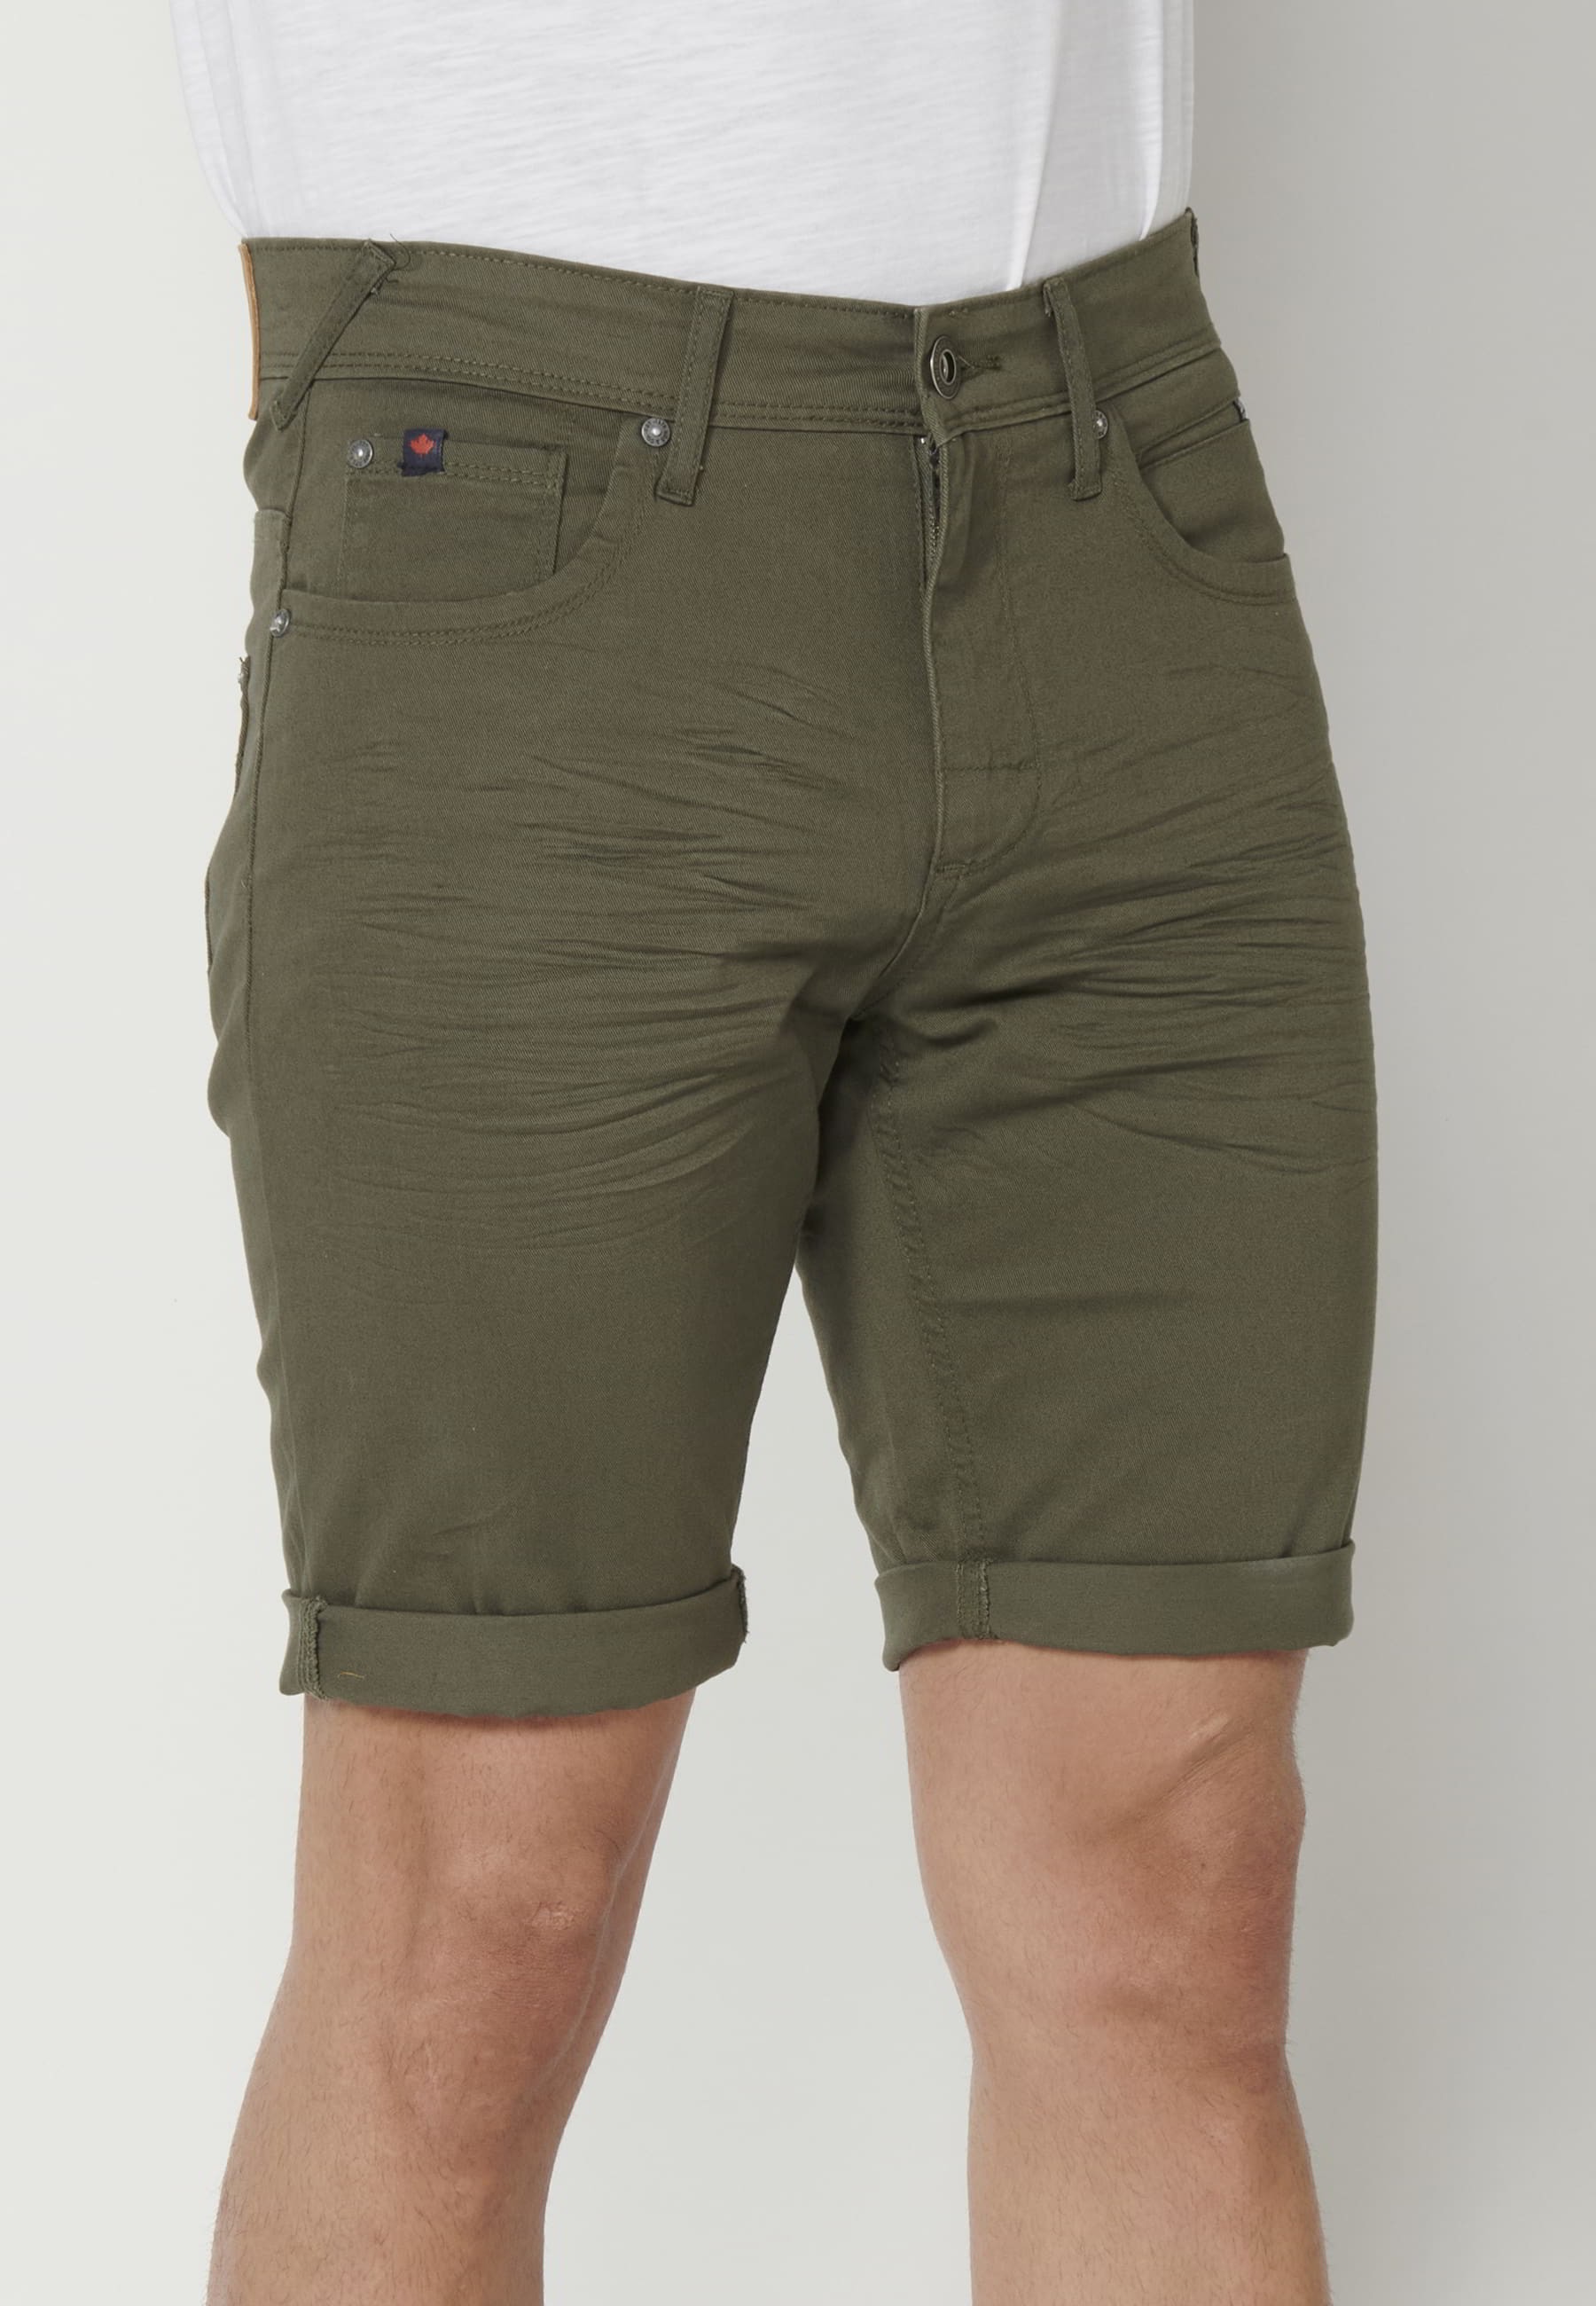 Grüne Shorts mit fünf Taschen für Herren